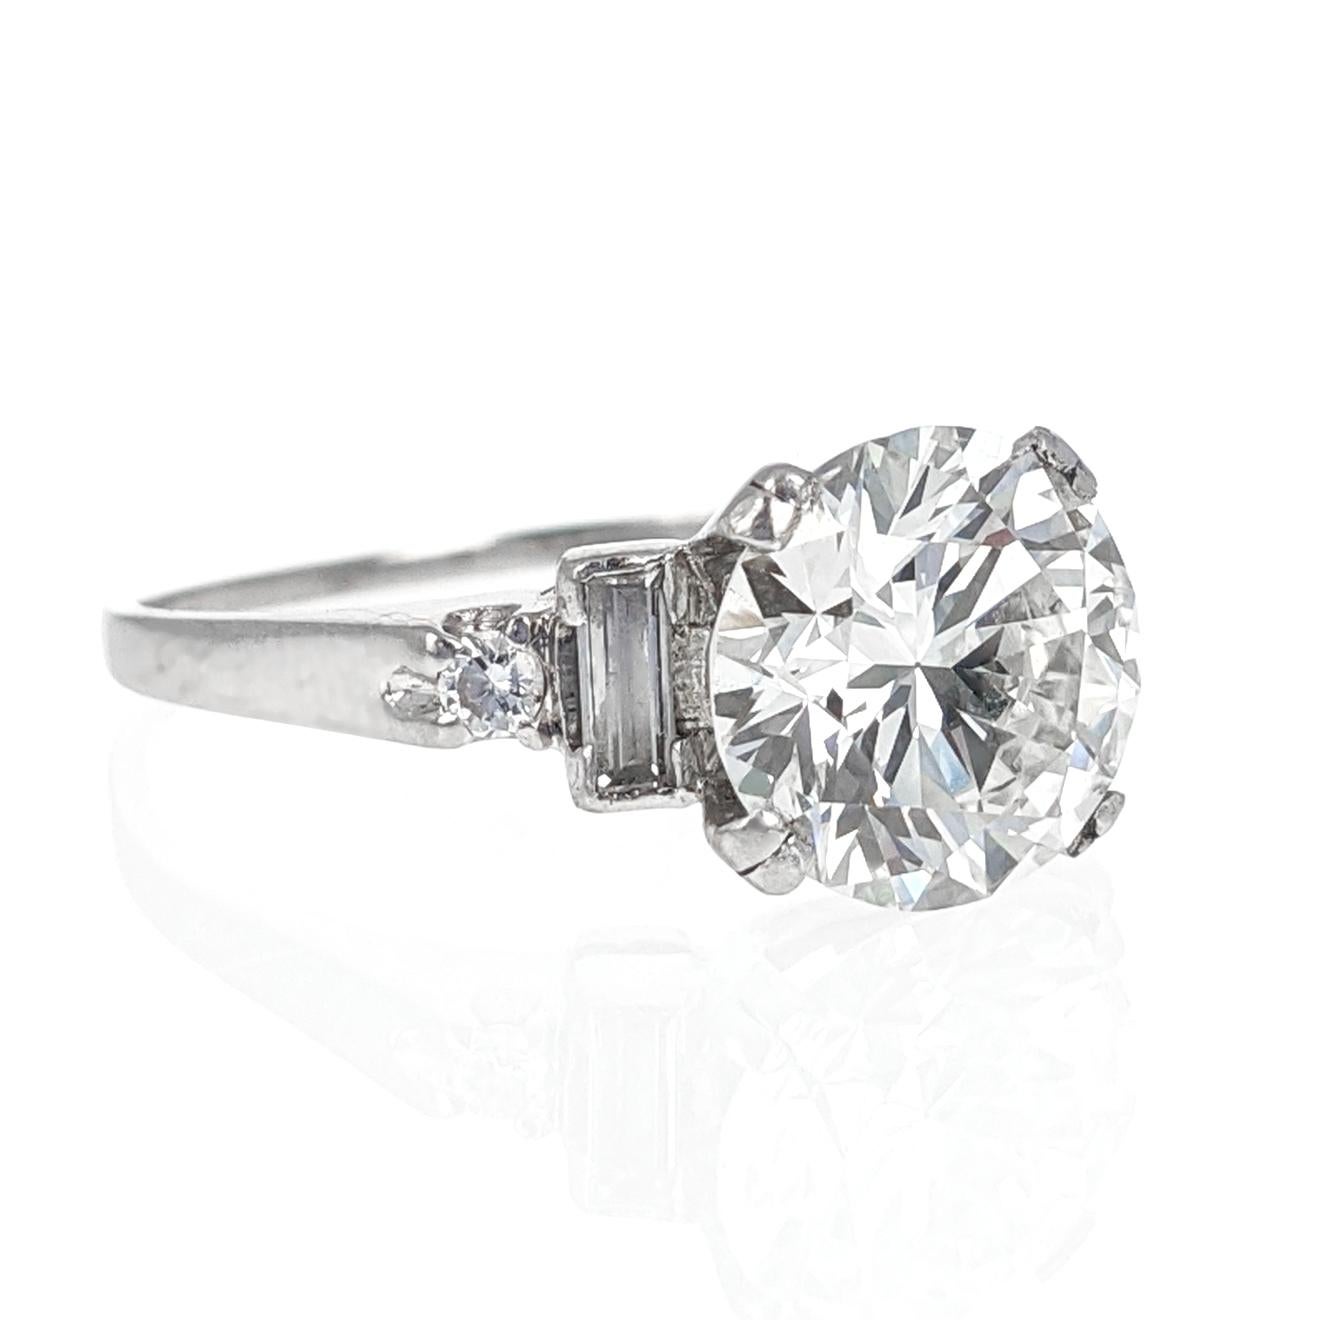 Round Cut 3.02 Carat GIA Certified Round Brilliant Cut Diamond Platinum Engagement Ring